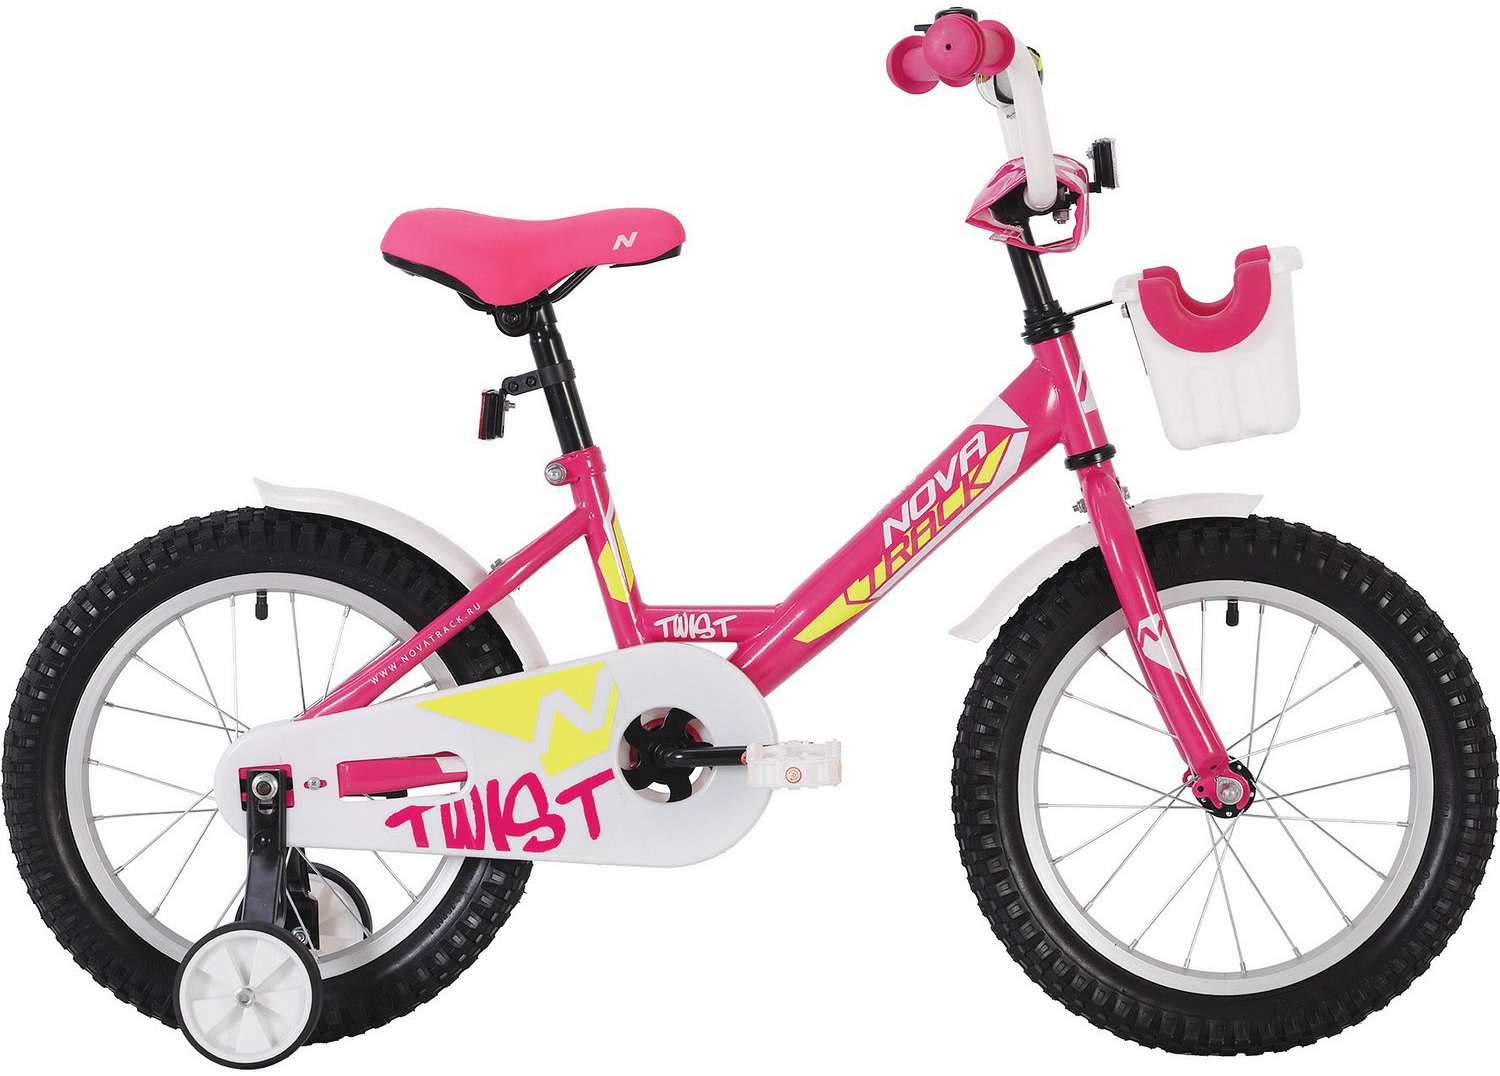  Отзывы о Детском велосипеде Novatrack Twist 16 с корзиной 2020